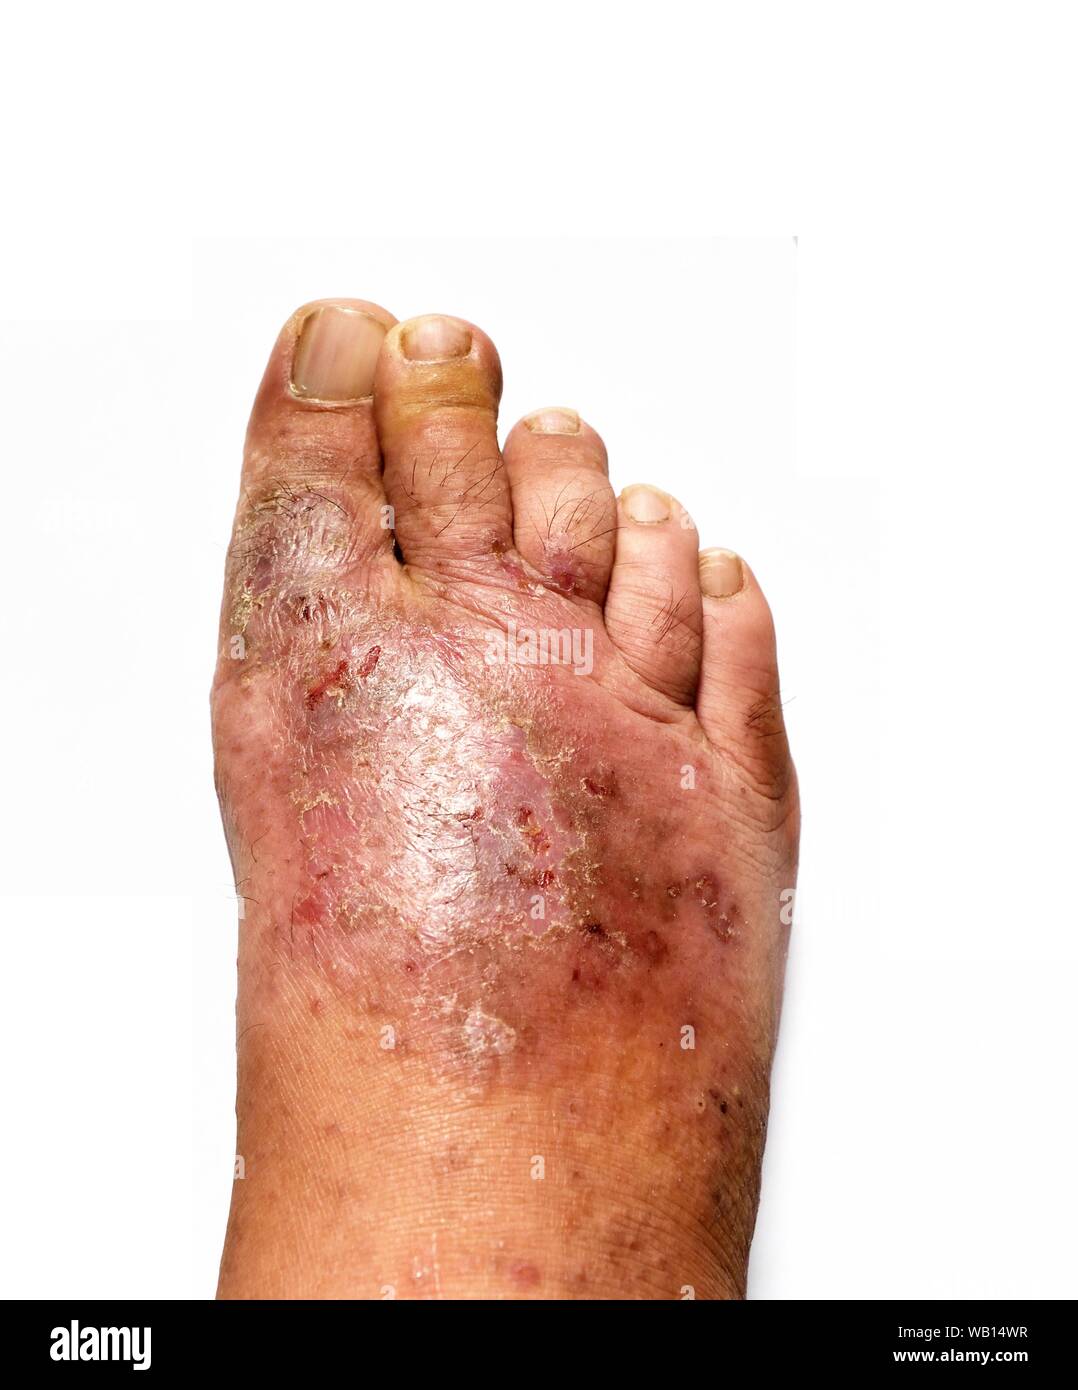 Der menschliche Fuß ist eine Pilzinfektion der Haut Läsionen auf weißem Hintergrund, Fußpilz, Dermatophyten oder Tinea pedis, Candida albicans Stockfoto